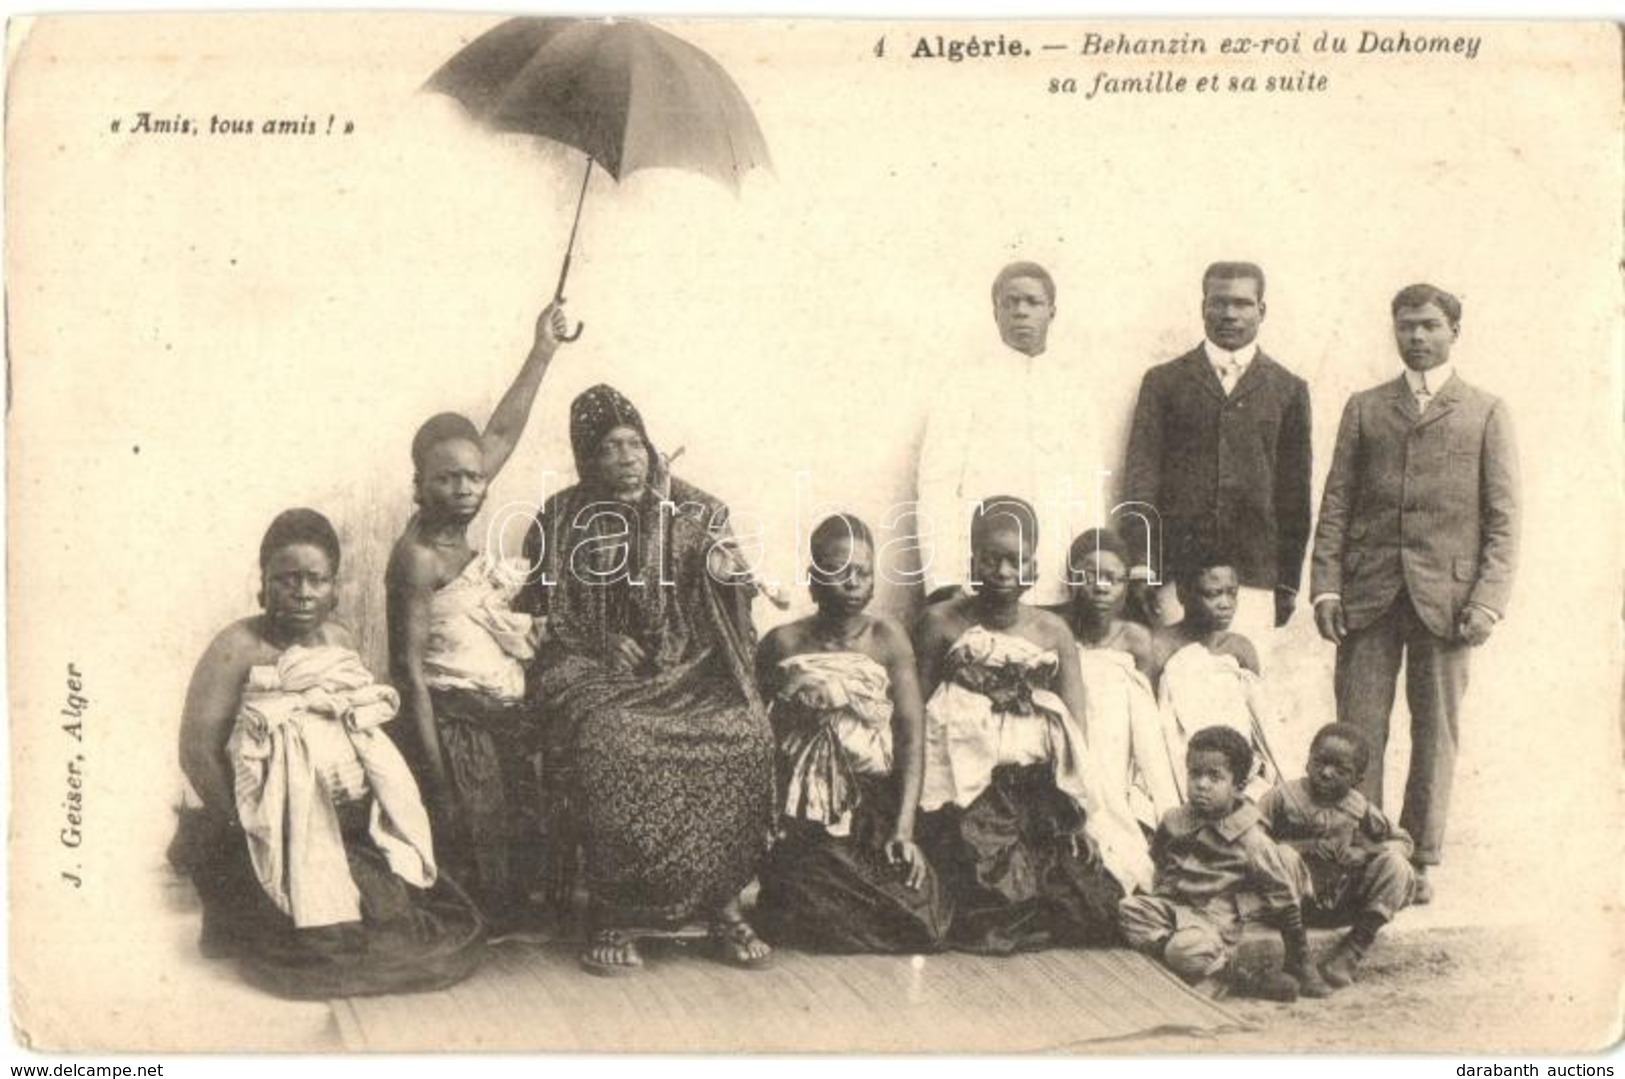 ** T2/T3 Algerie, Behnazin Ex-roi Du Dahomey Sa Familie Et Sa Suite / Algerian Folklore, Behnazin Ex-king Of Dahomey And - Unclassified